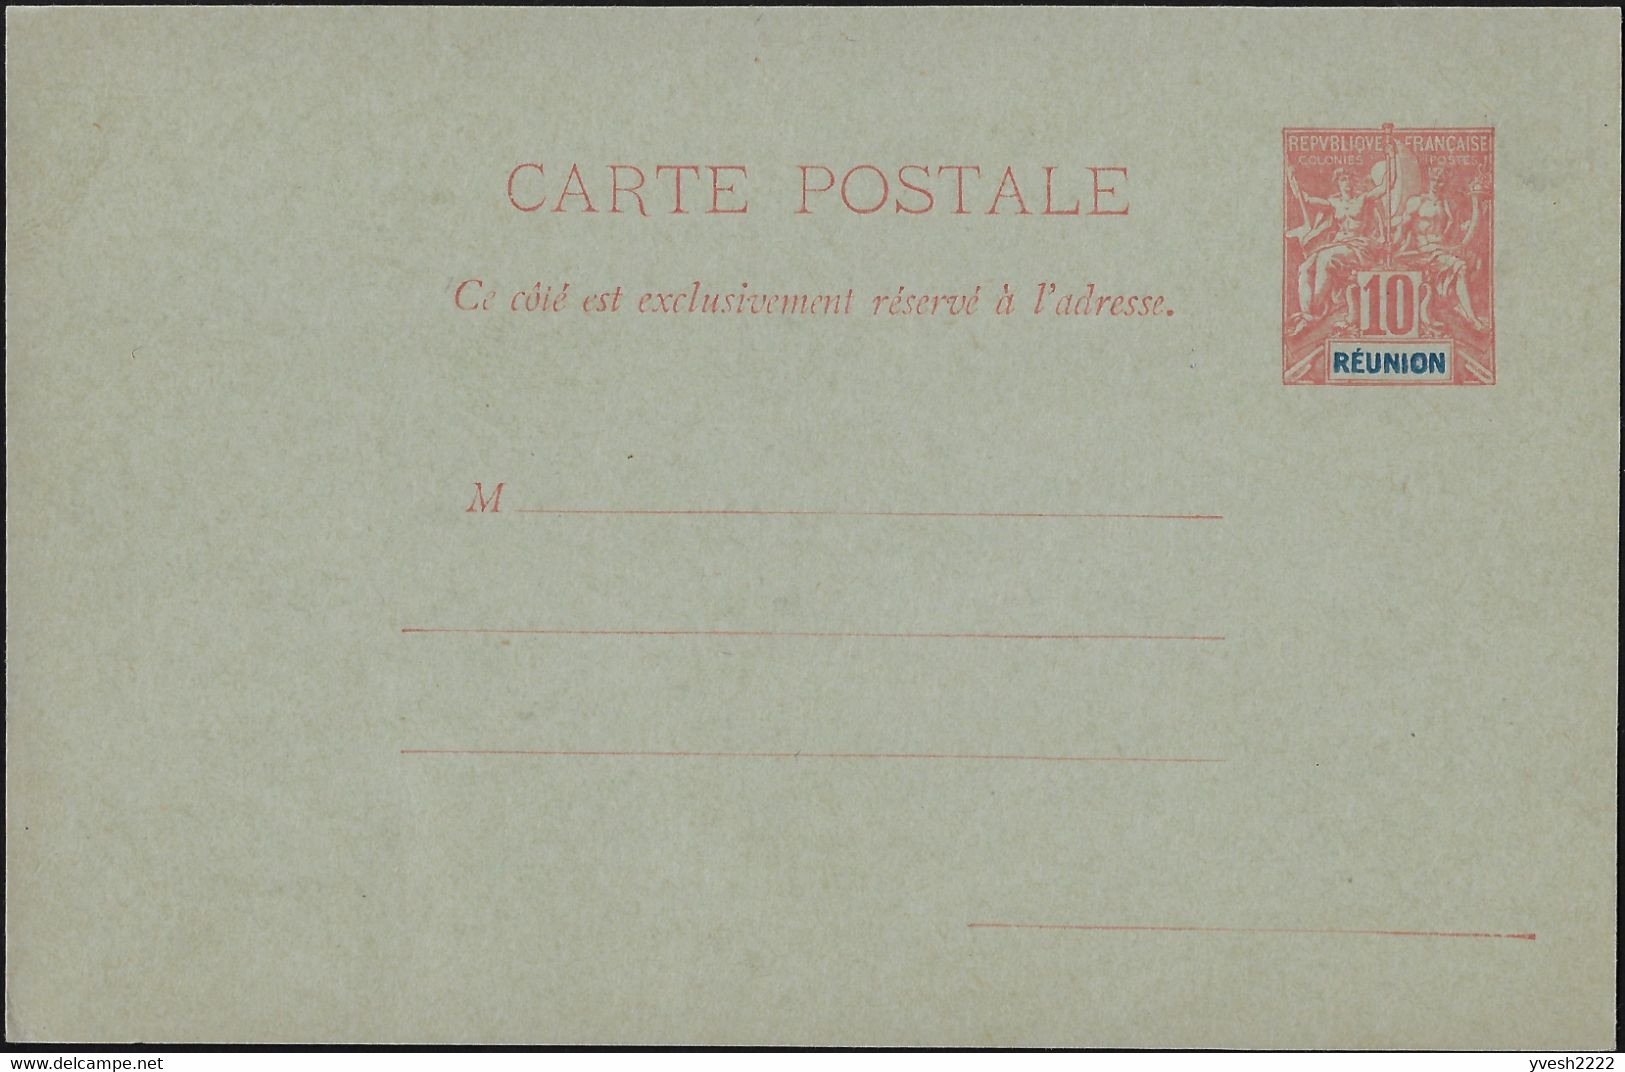 Réunion 1900. 3 entiers postaux, cartes avec et sans réponse payée. Curiosité, « Réunion » décentré